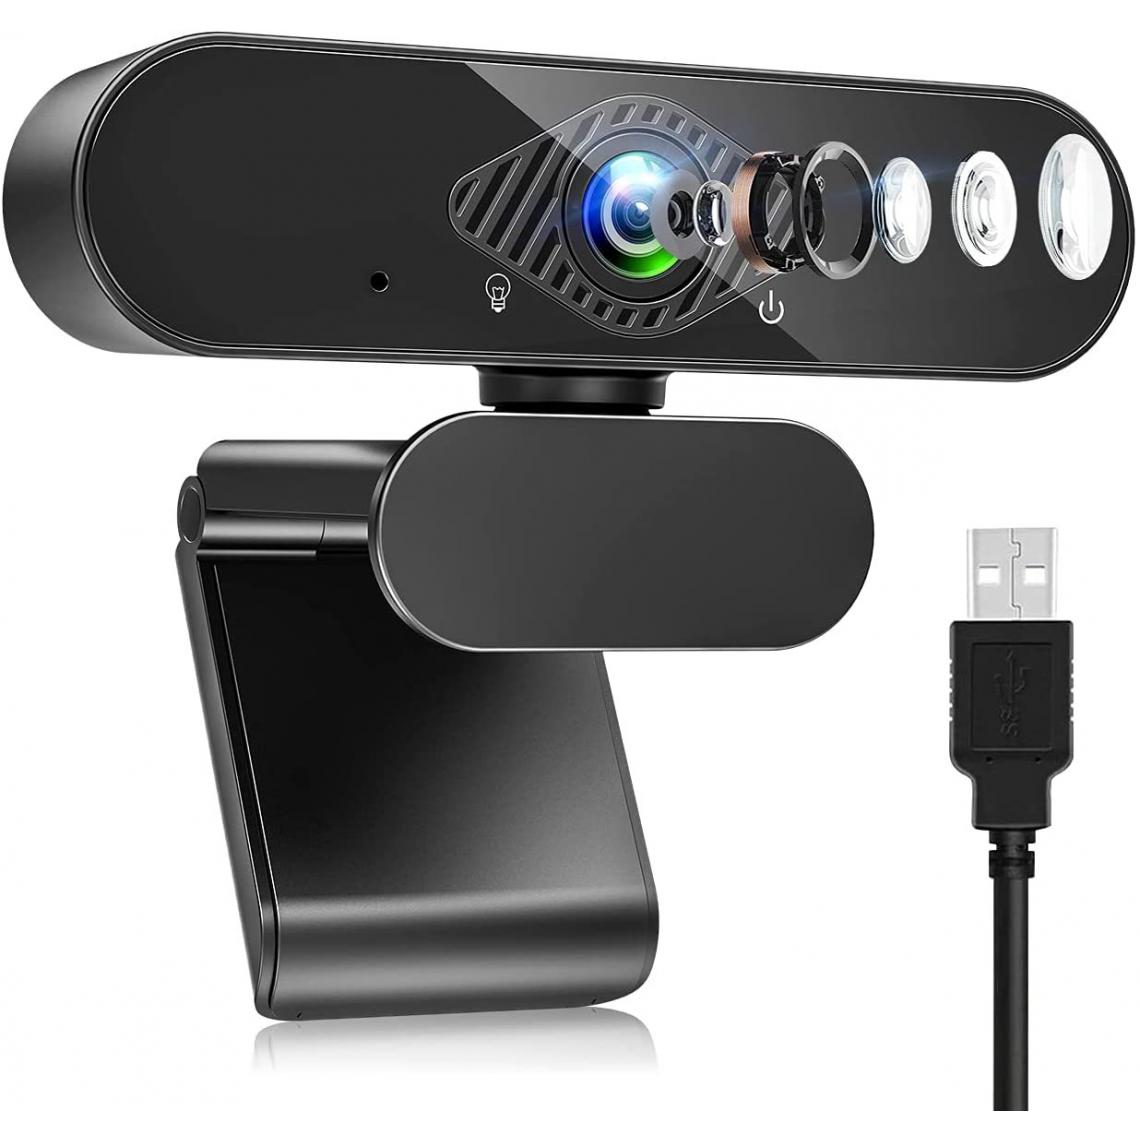 Chrono - Webcam pour PC avec Microphone Stéréo, 1080P Full HD Caméra Web USB avec Auto Focus, Micro Antibruit et 360° Rotation pour Chat Vidéo et Enregistrement, Compatible avec Windows, Mac et Android(Noir) - Autres accessoires smartphone